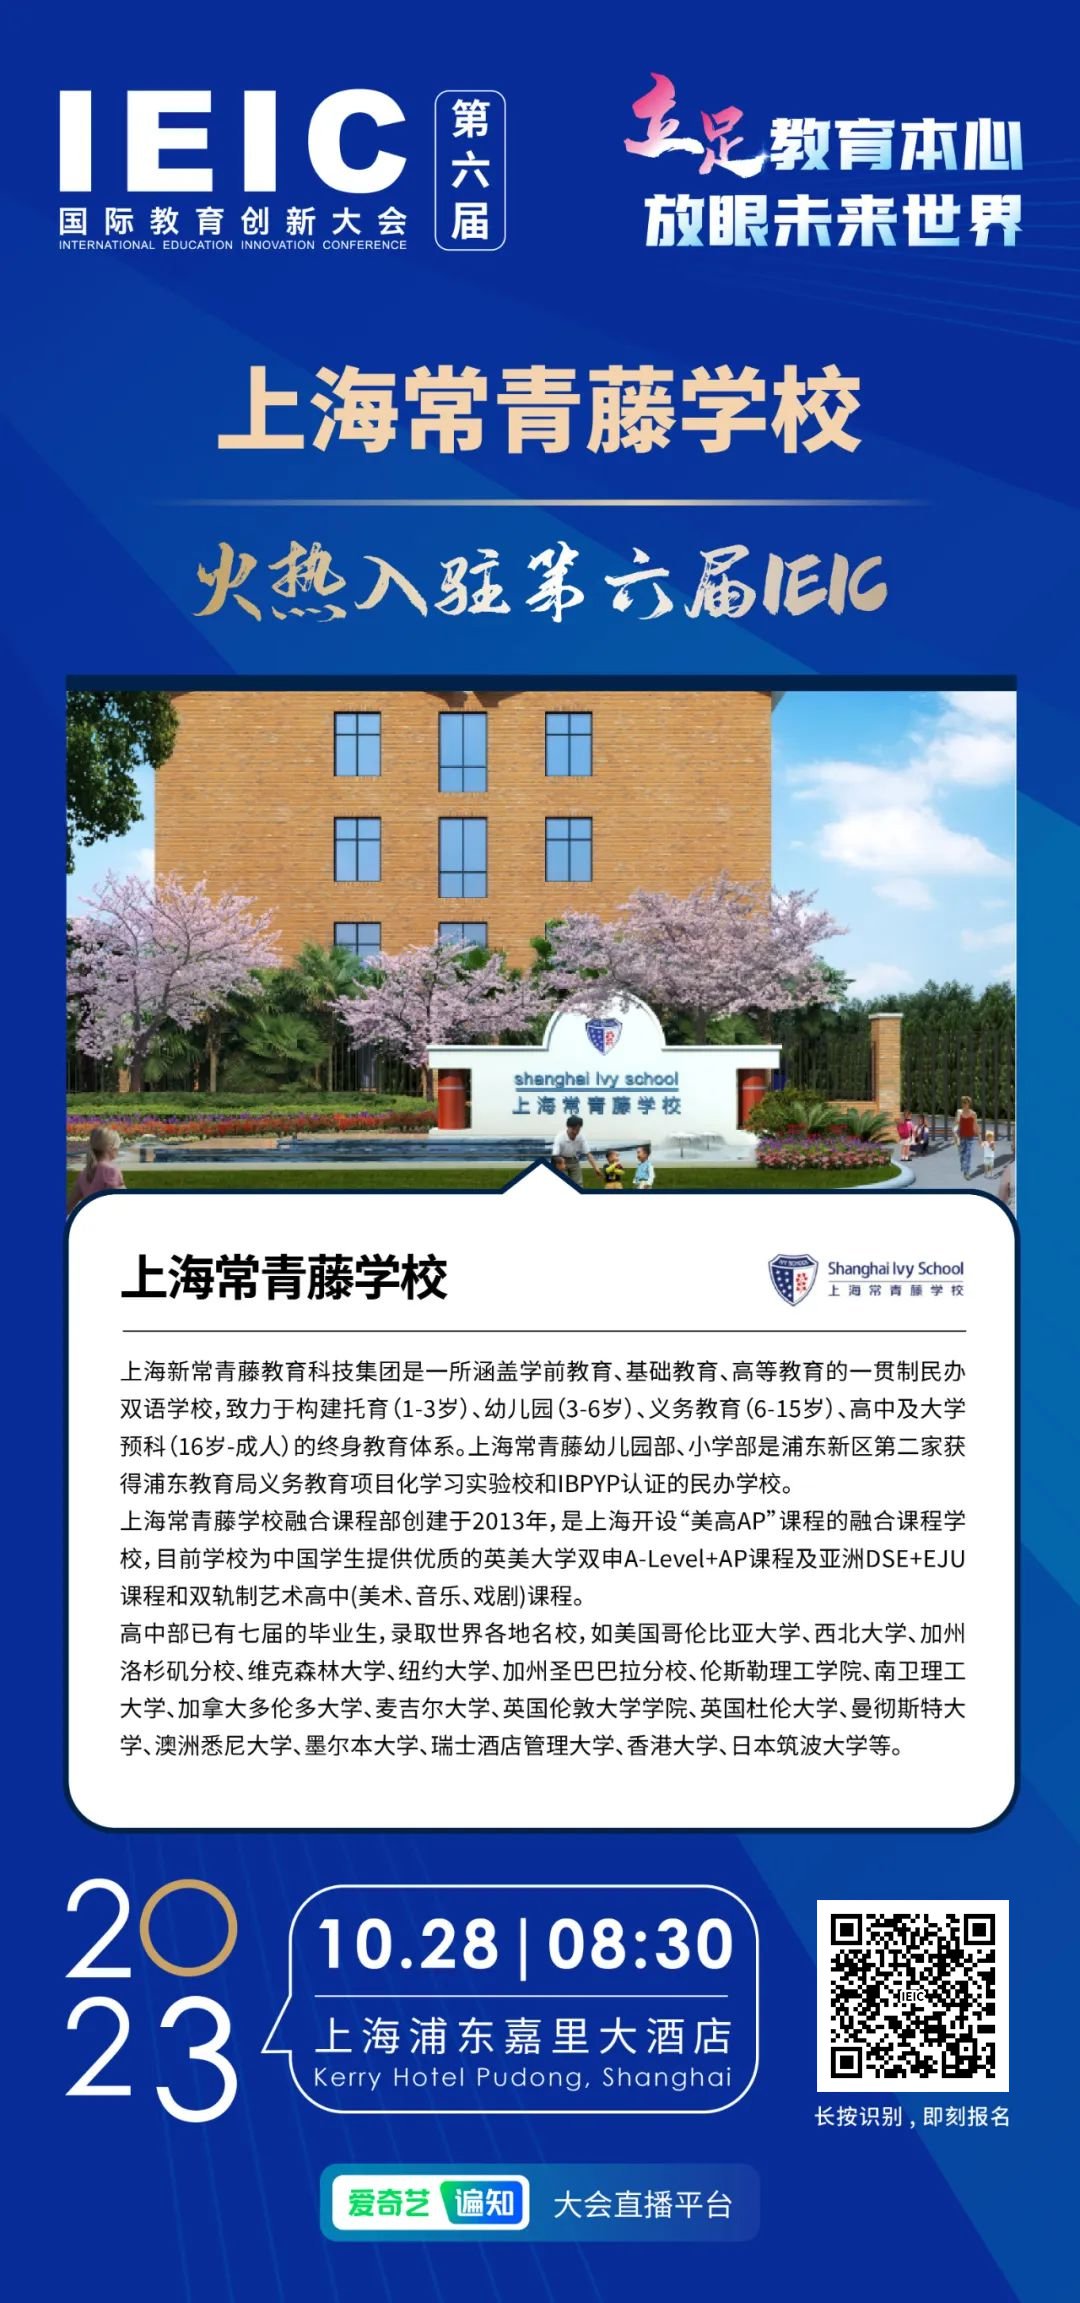  上海常青藤学校火热入驻第六届IEIC国际教育创新大会